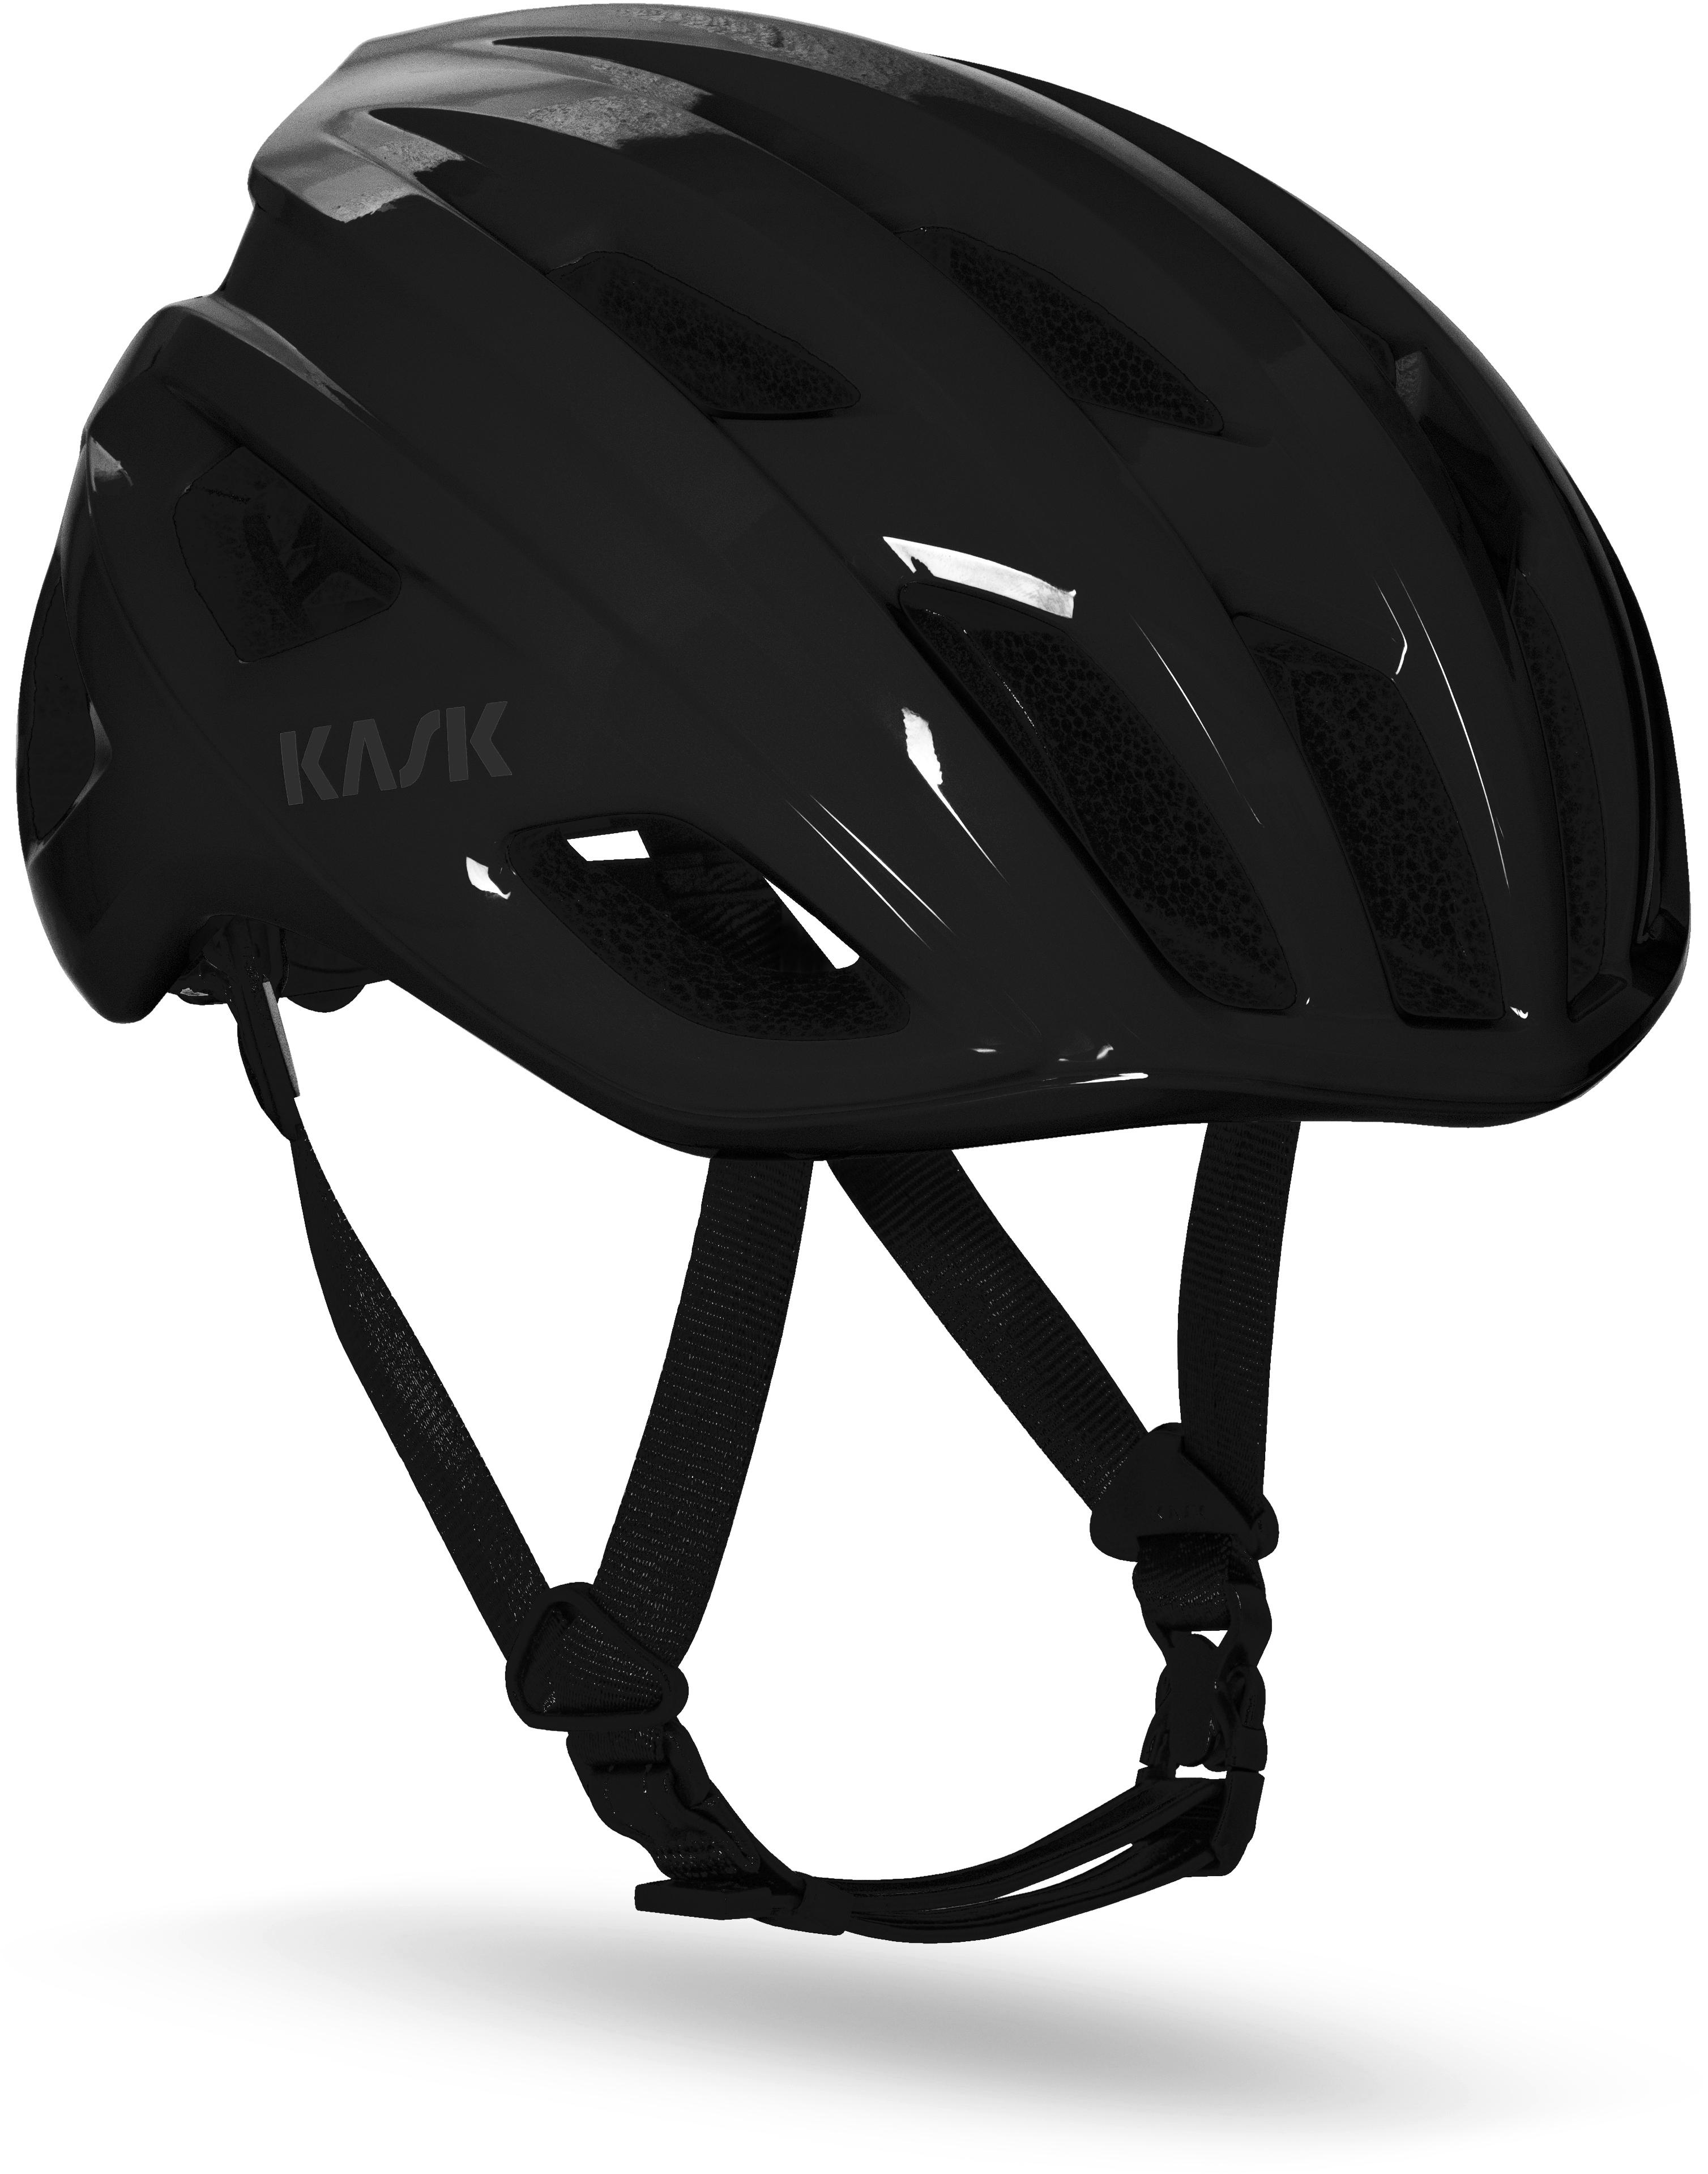 Kask Mojito Wg11 Road Helmet Black, Large